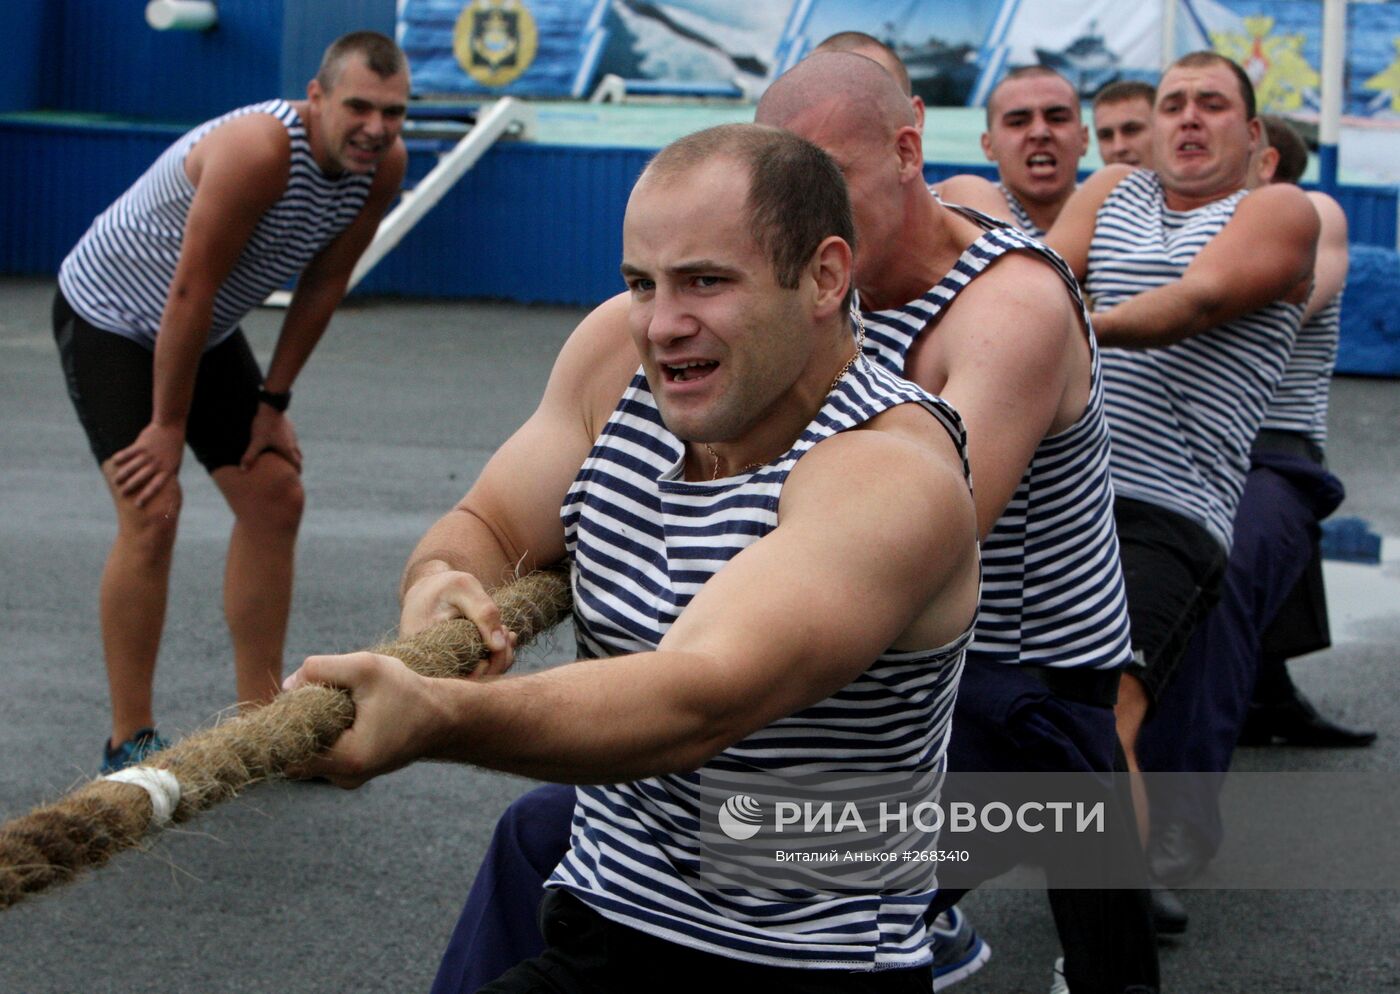 Спортивные мероприятия на Водной станции ТОФ во Владивостоке